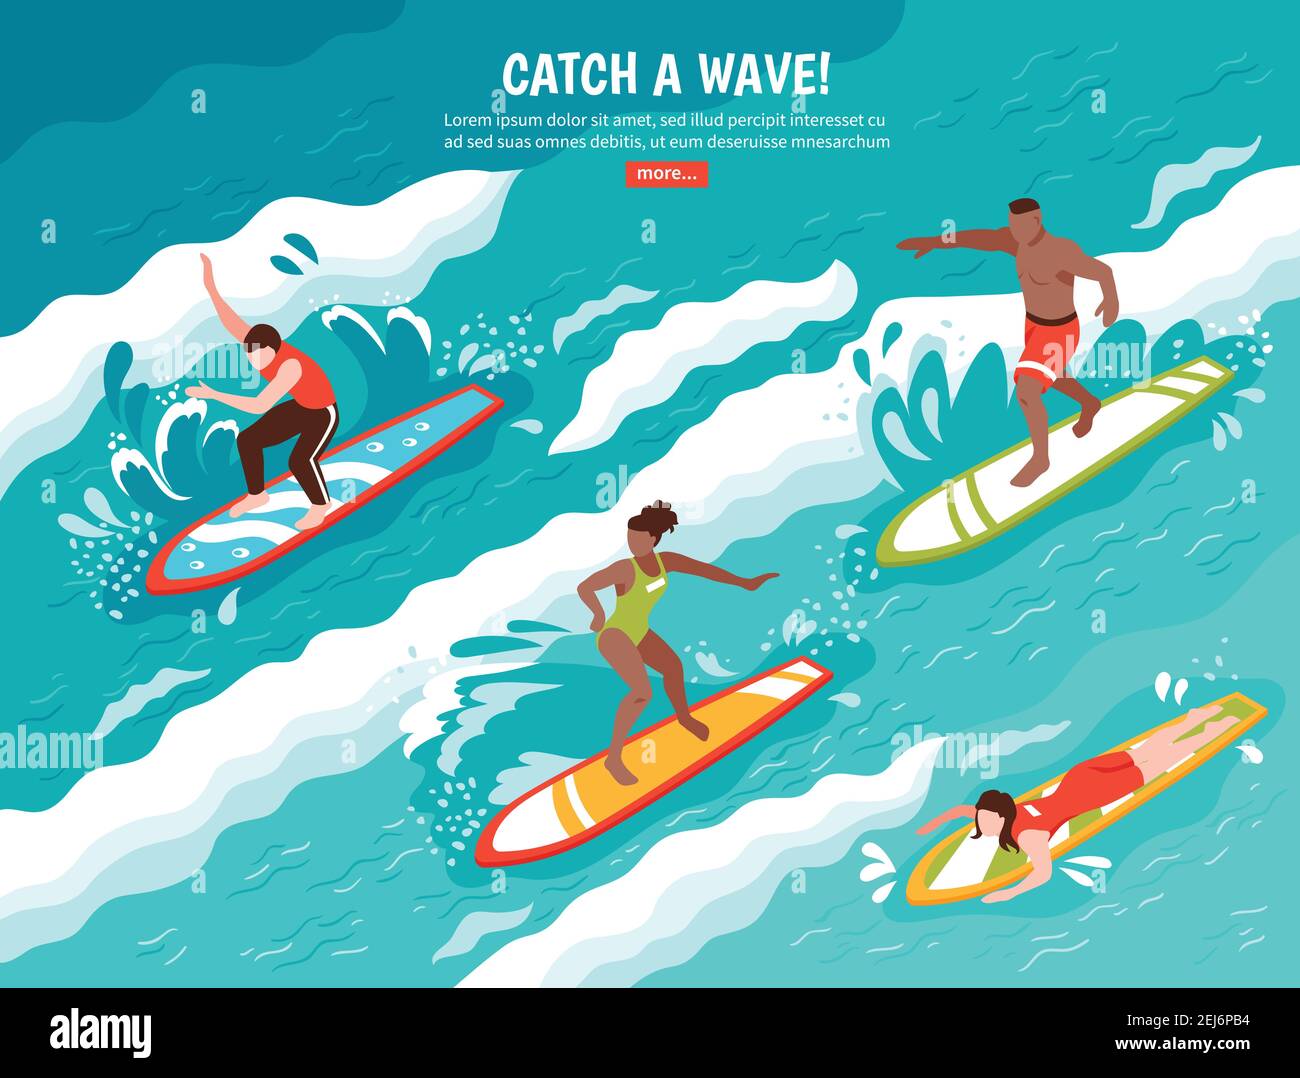 Surf composizione piatta con gruppo di personaggi umani surf acqua onda sulle tavole da surf con l'illustrazione vettoriale del pulsante read more Illustrazione Vettoriale